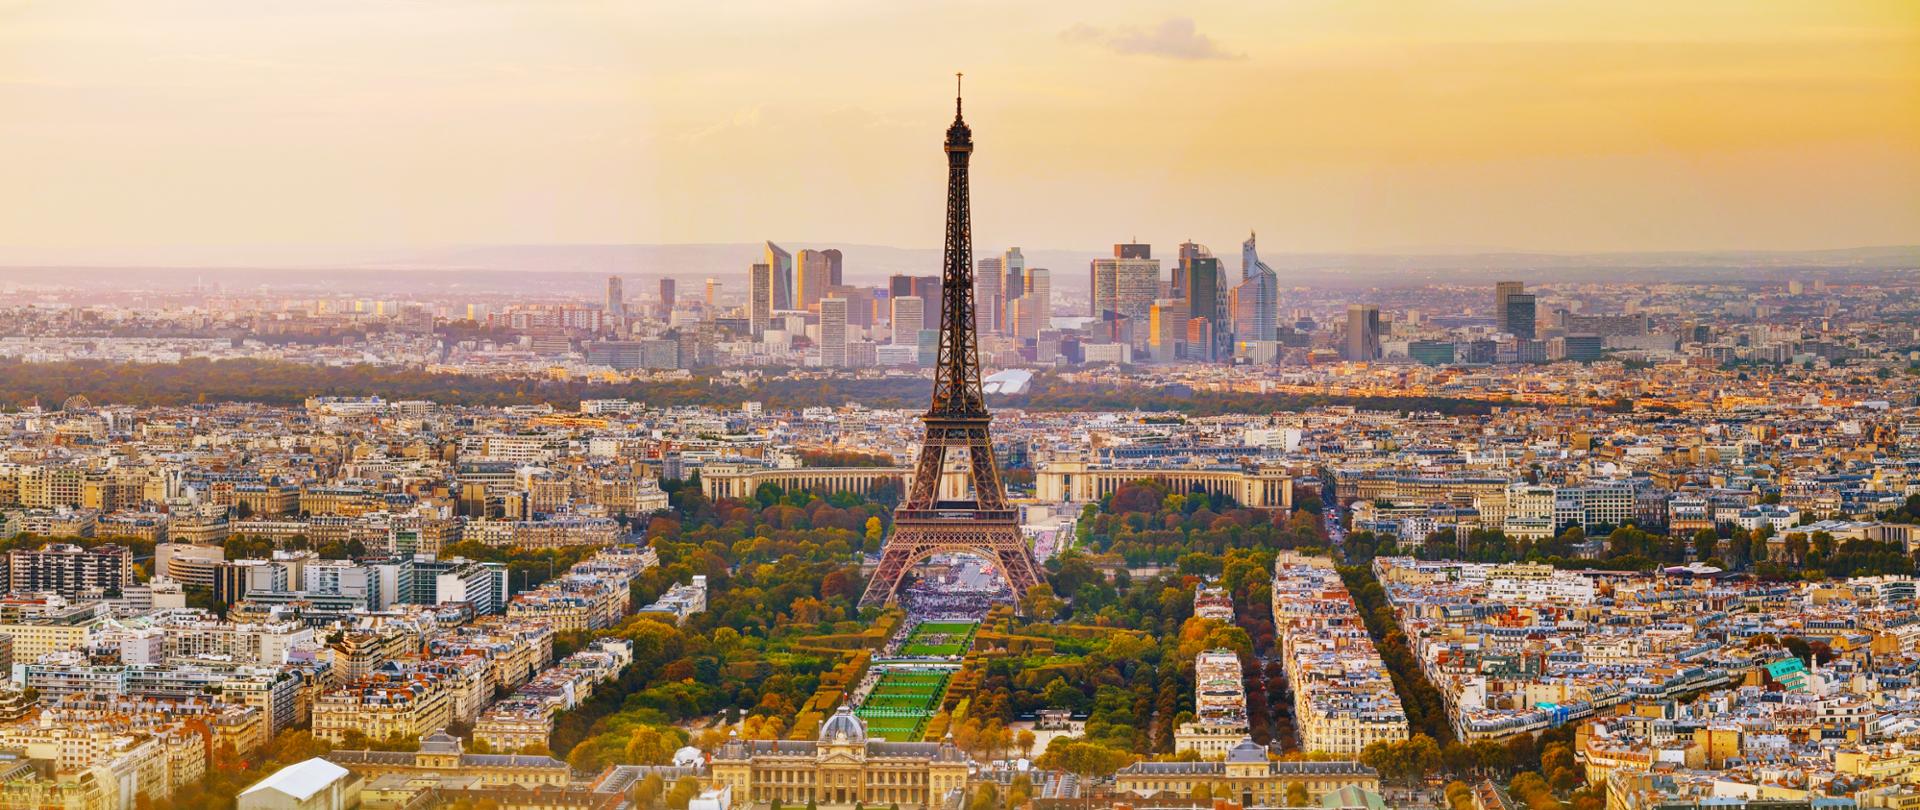 Paryż z lotu ptaka. Widać Wieżę Eiffela, centrum i dzielnicę biznesową.